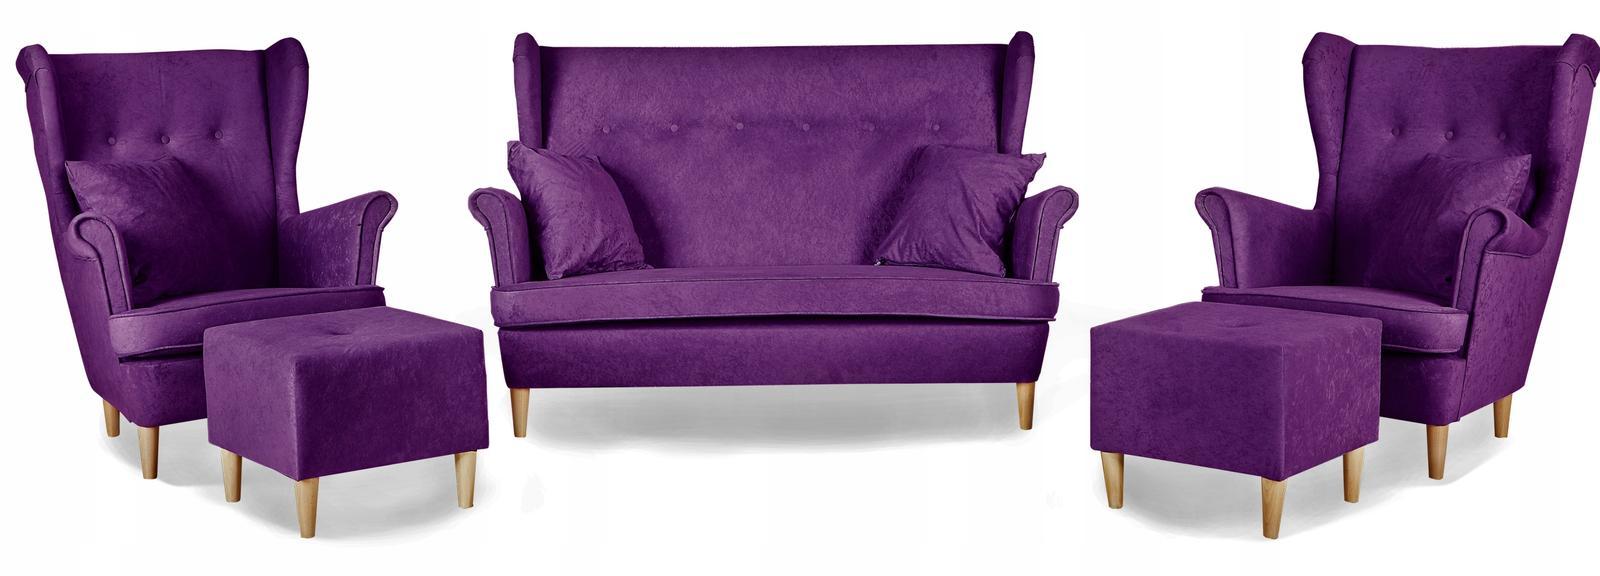 Zestaw wypoczynkowy mebli ARI 149x104x92 cm uszak sofa fotele pufy do salonu Mirofaza fioletowy nr. 1